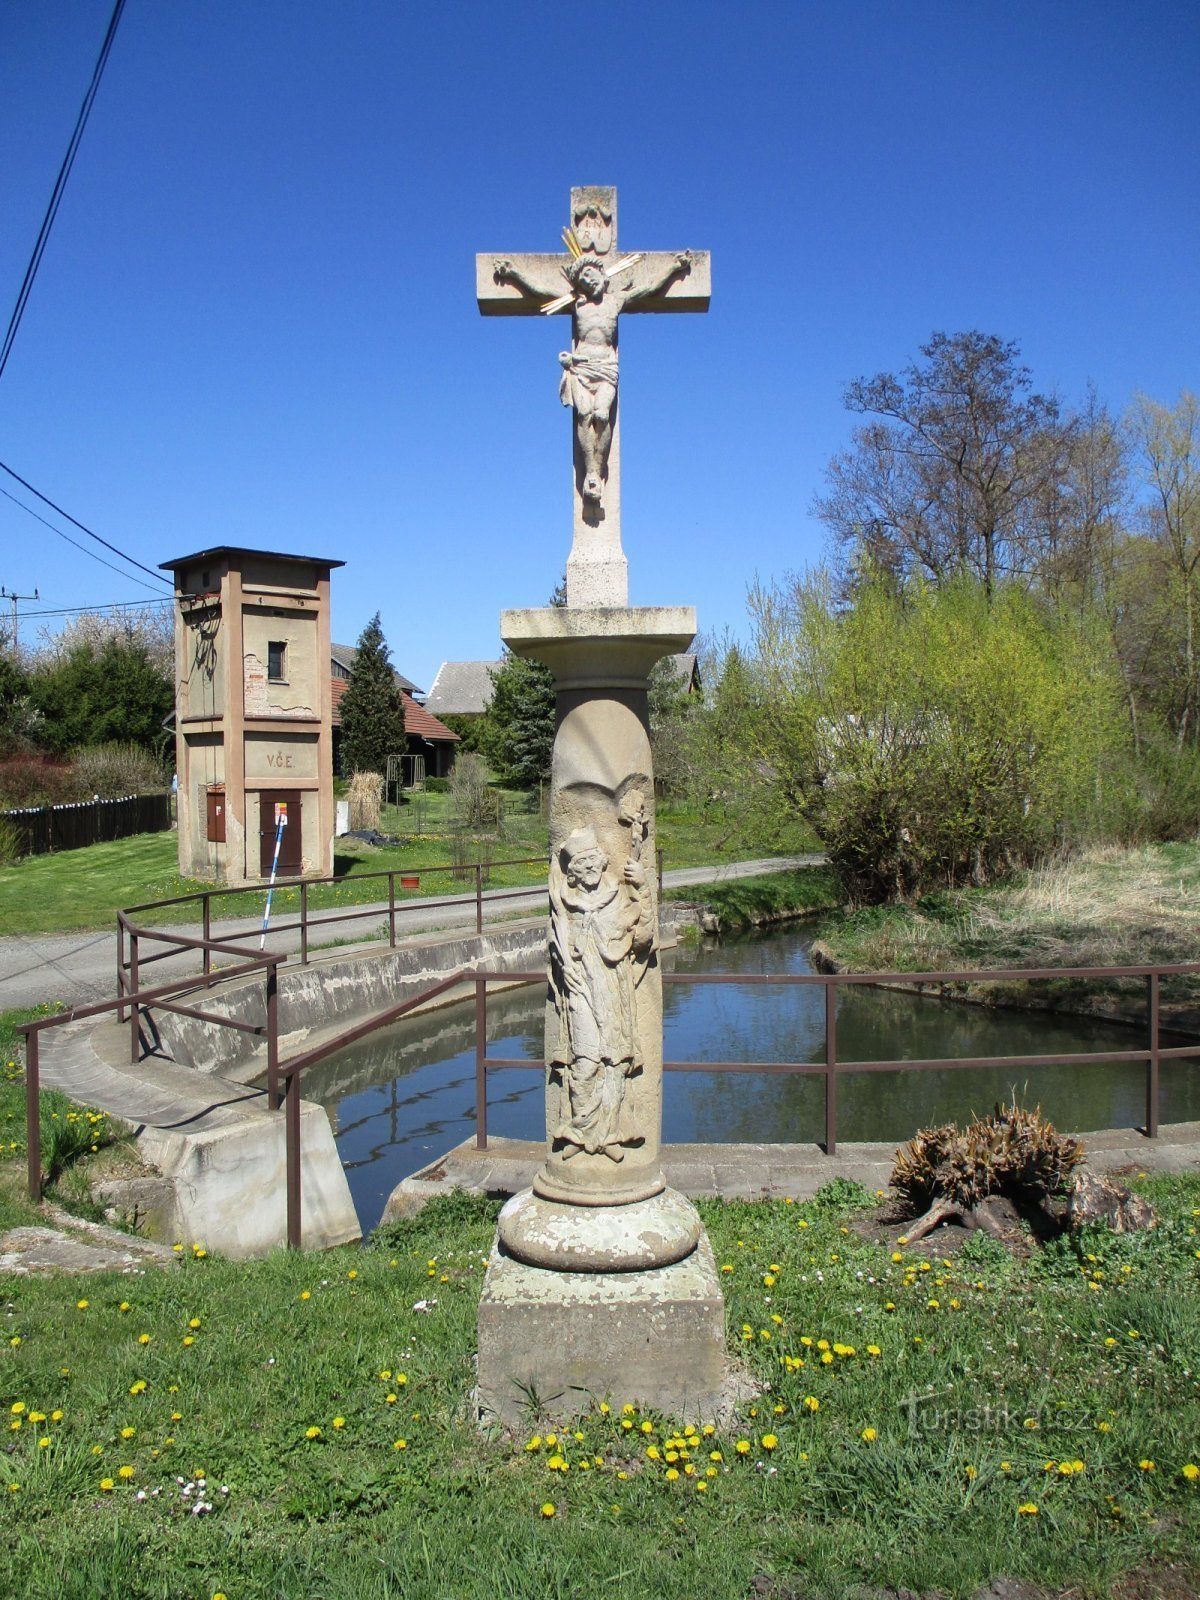 Cross by the pond (Sedlec, 20.4.2020/XNUMX/XNUMX)